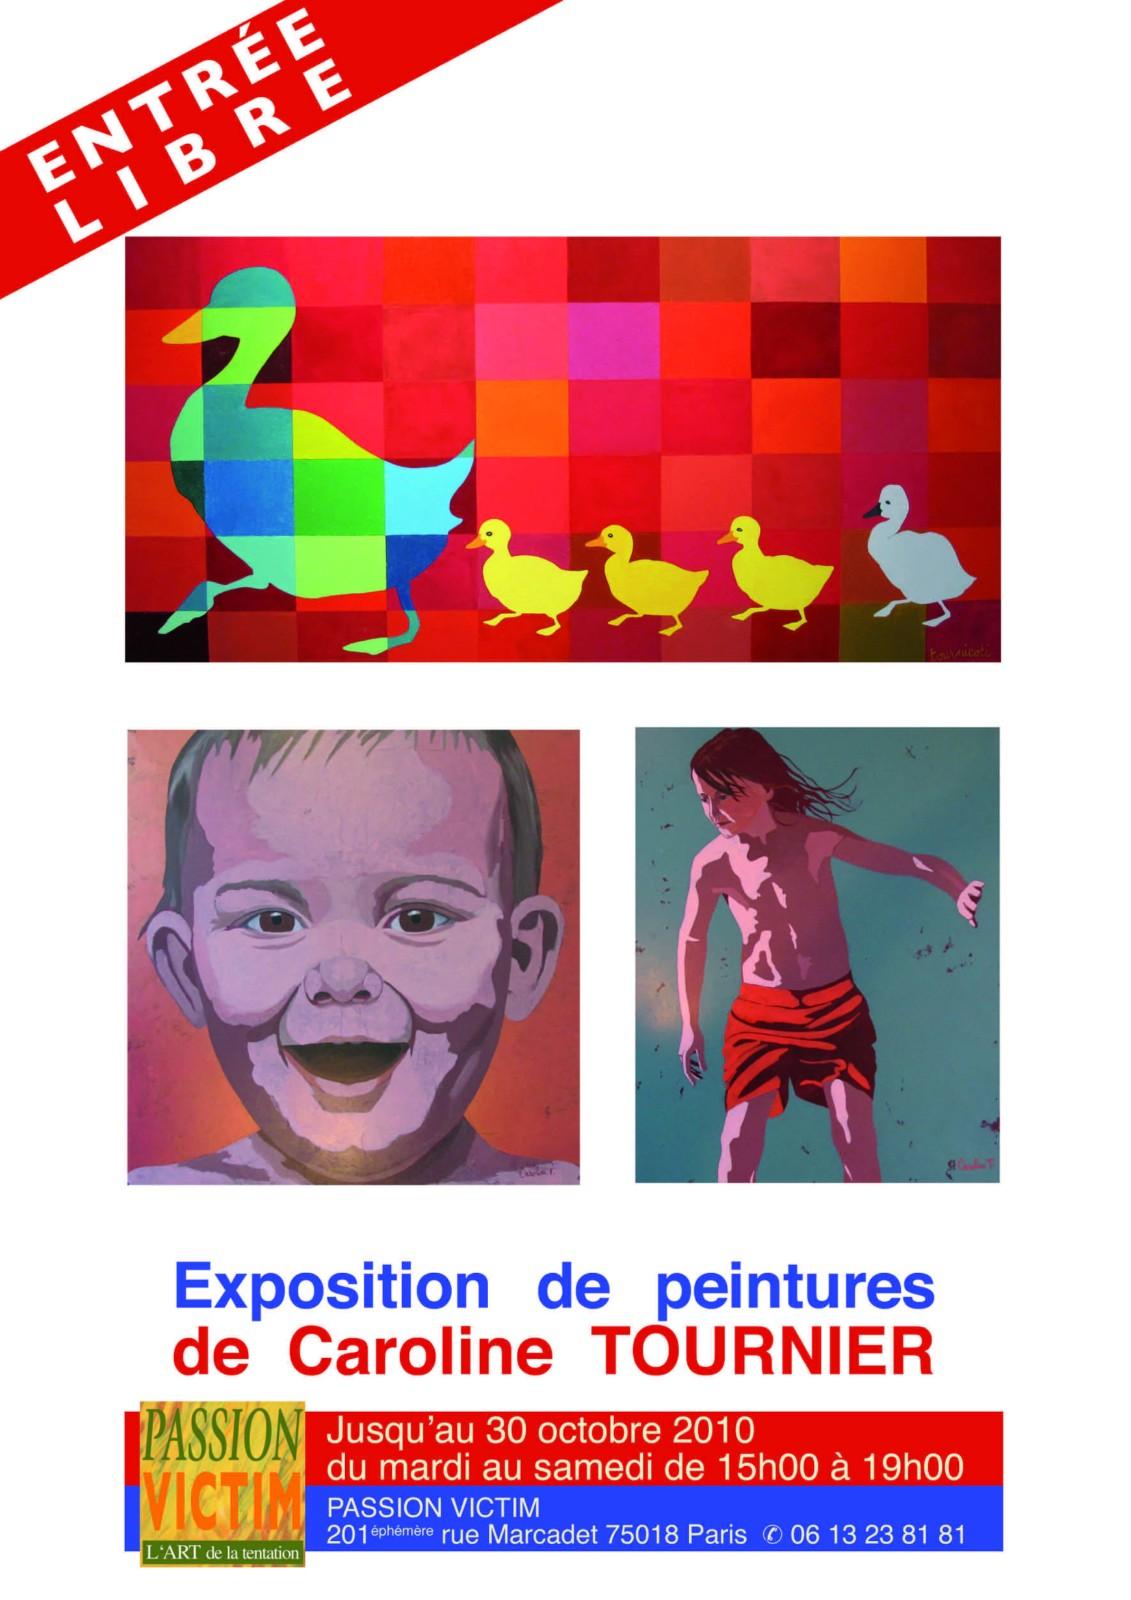 Affiche expo paris oct 2010 1600x1200